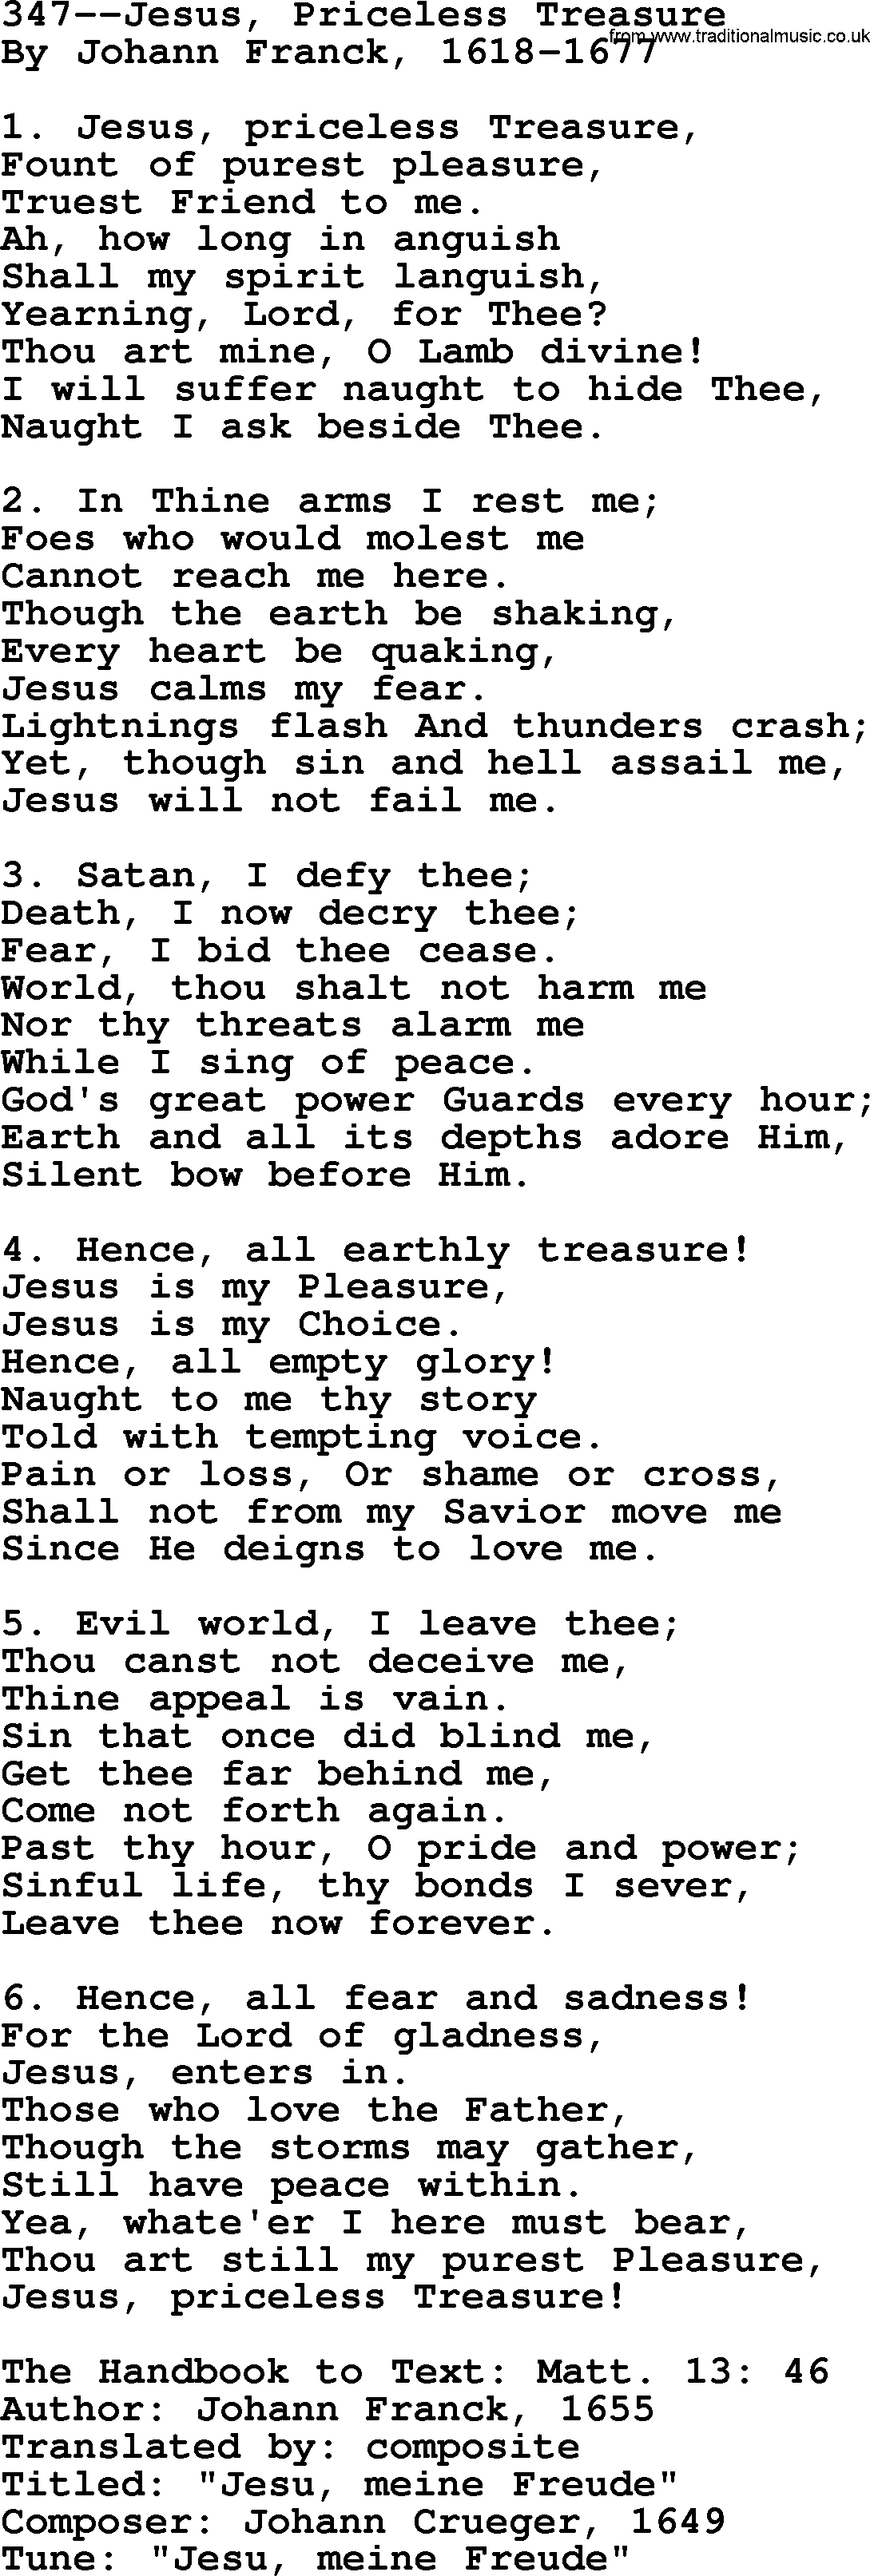 Lutheran Hymn: 347--Jesus, Priceless Treasure.txt lyrics with PDF